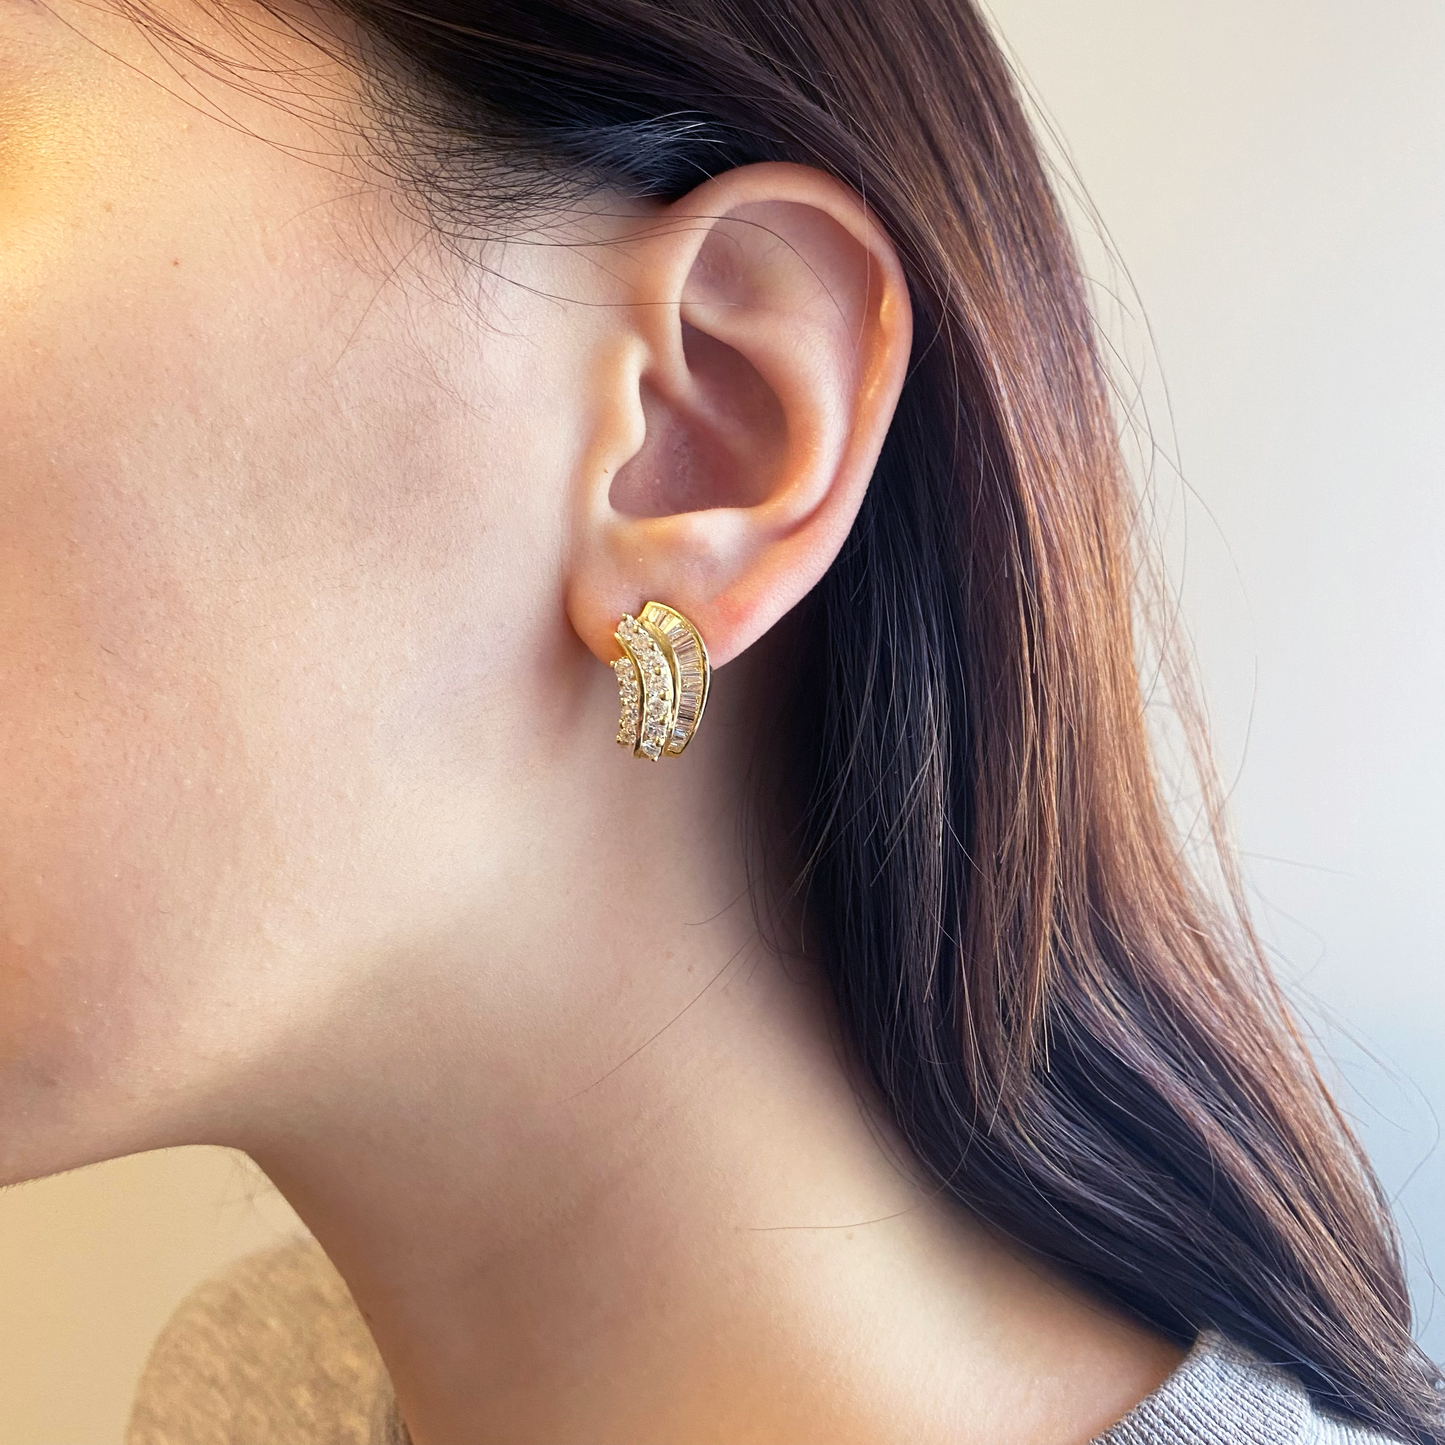 1980s 18KT Yellow Gold Diamond Earrings worn on ear